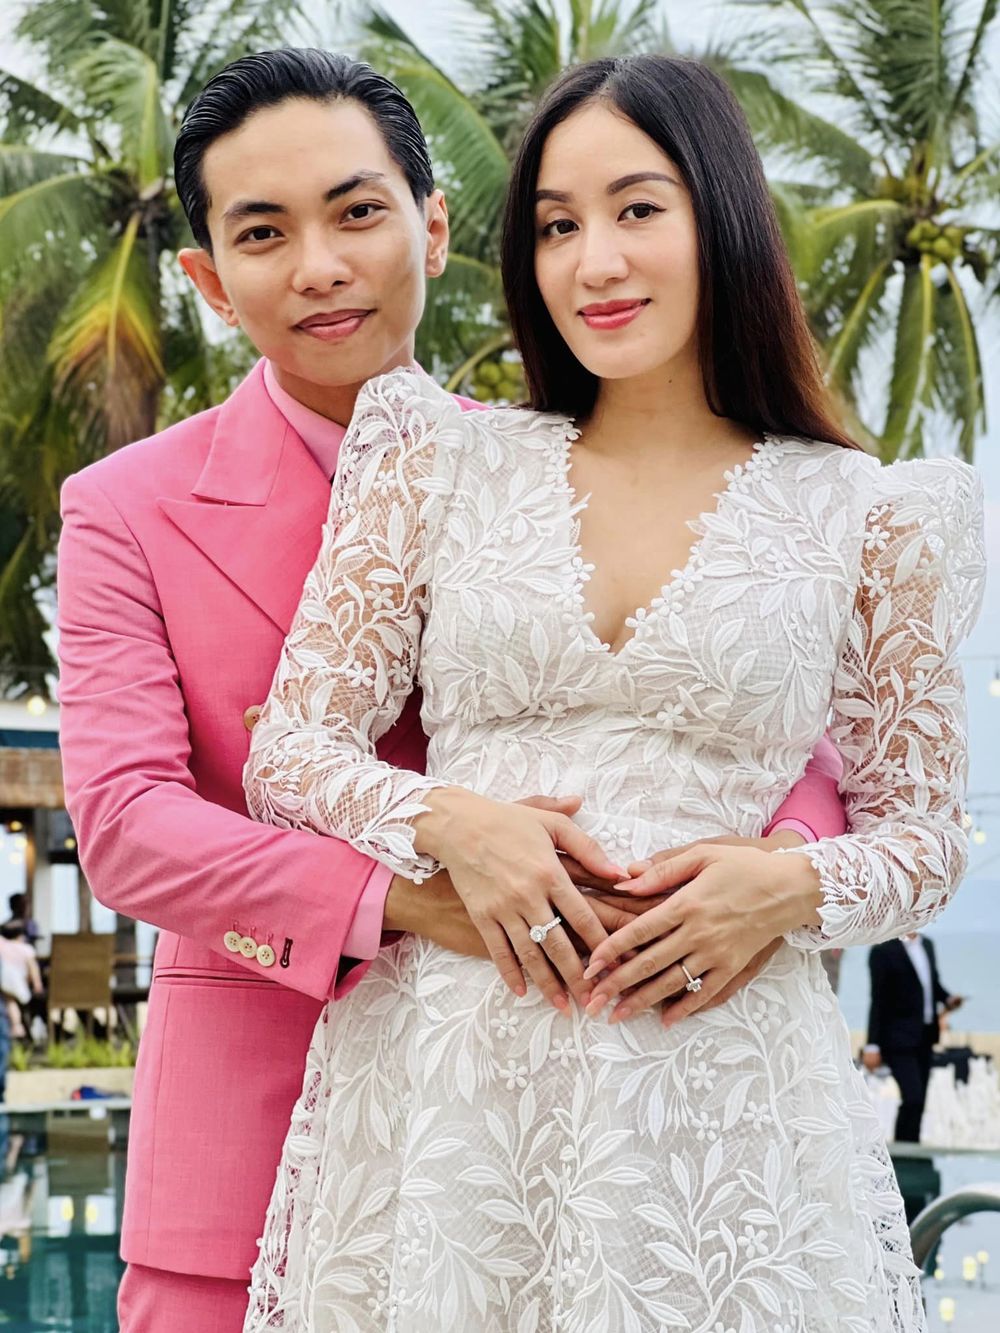  
Chuyện tình lệch tuổi của cặp đôiu Khánh Thi - Phan Hiển khiến nhiều người ngưỡng mộ. (Ảnh: FB Nguyen Khanh Thi)